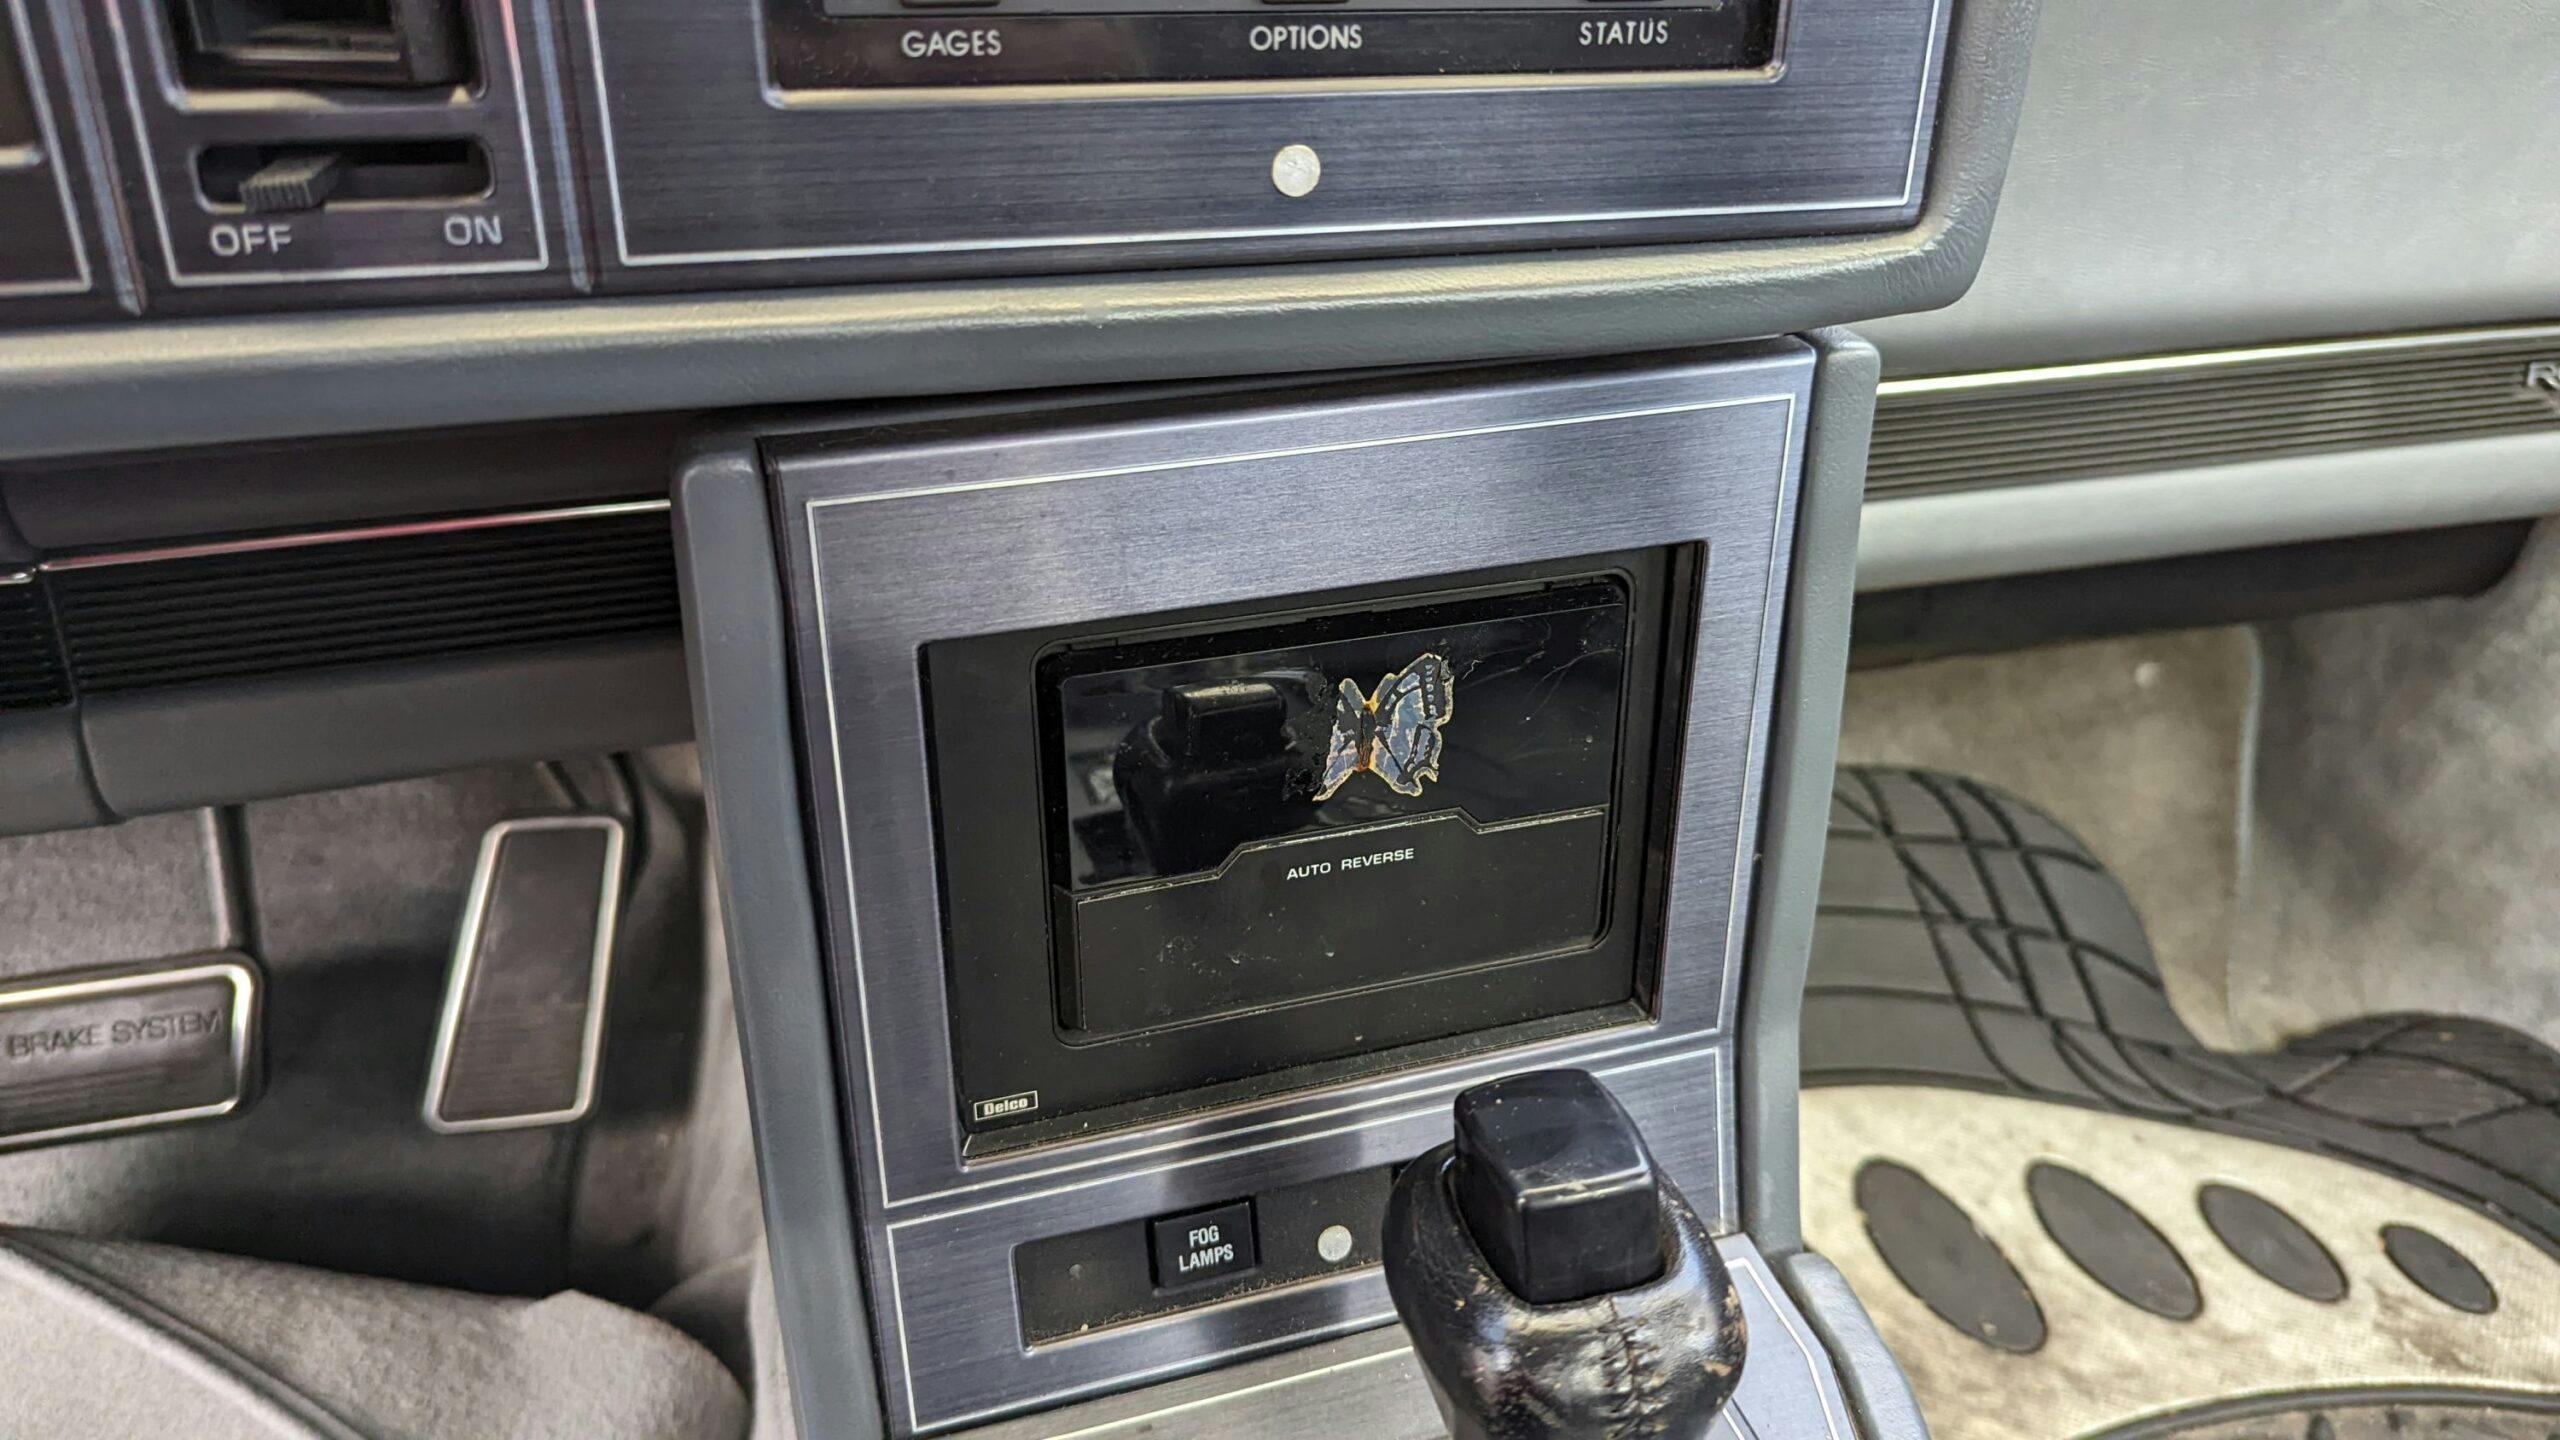 1989 Buick Reatta center console